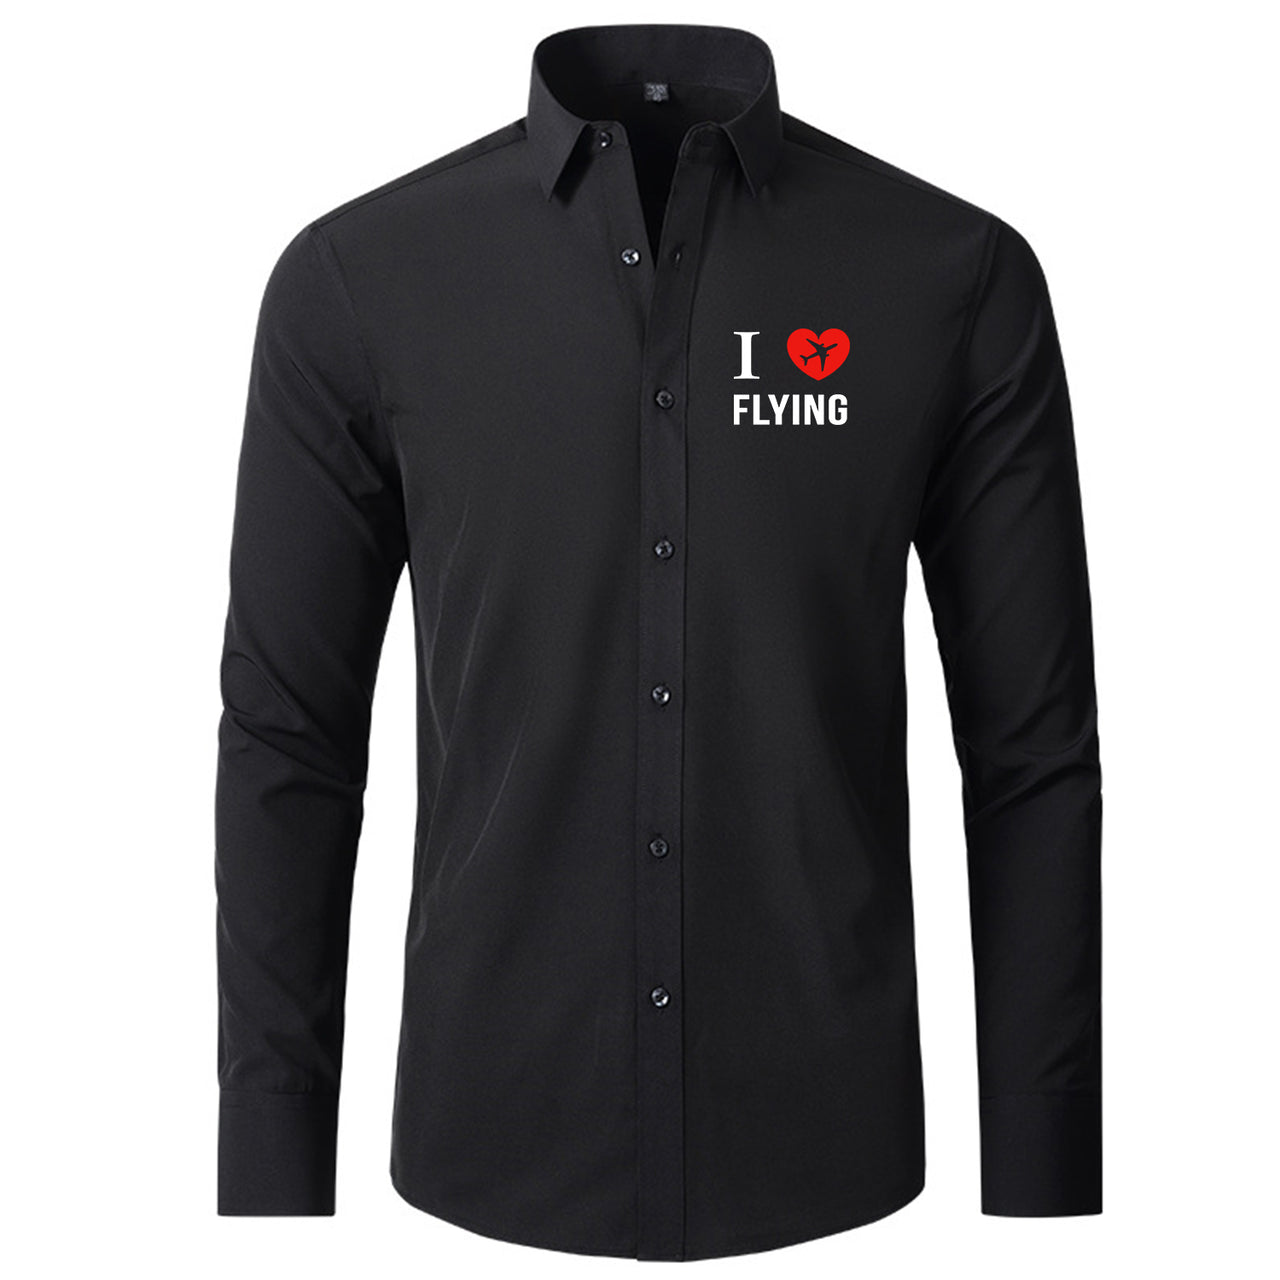 I Love Flying Designed Long Sleeve Shirts